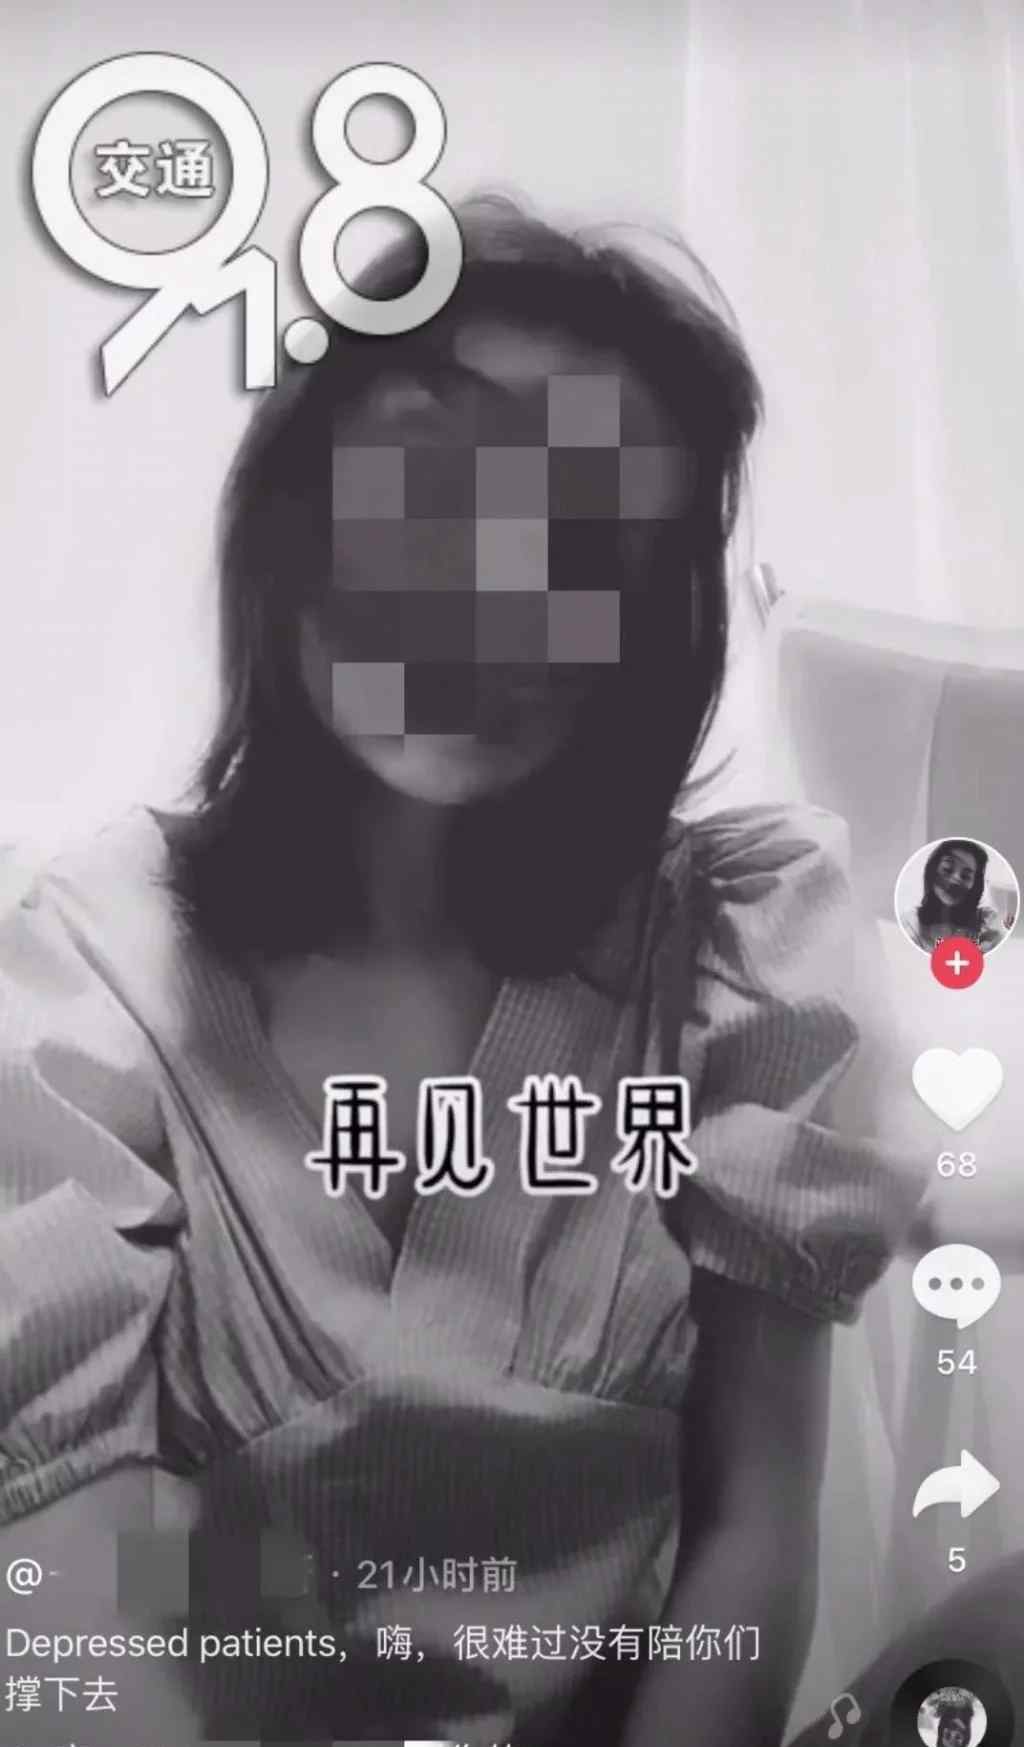 杭州抖音女主播直播自杀 吞30多颗安眠药